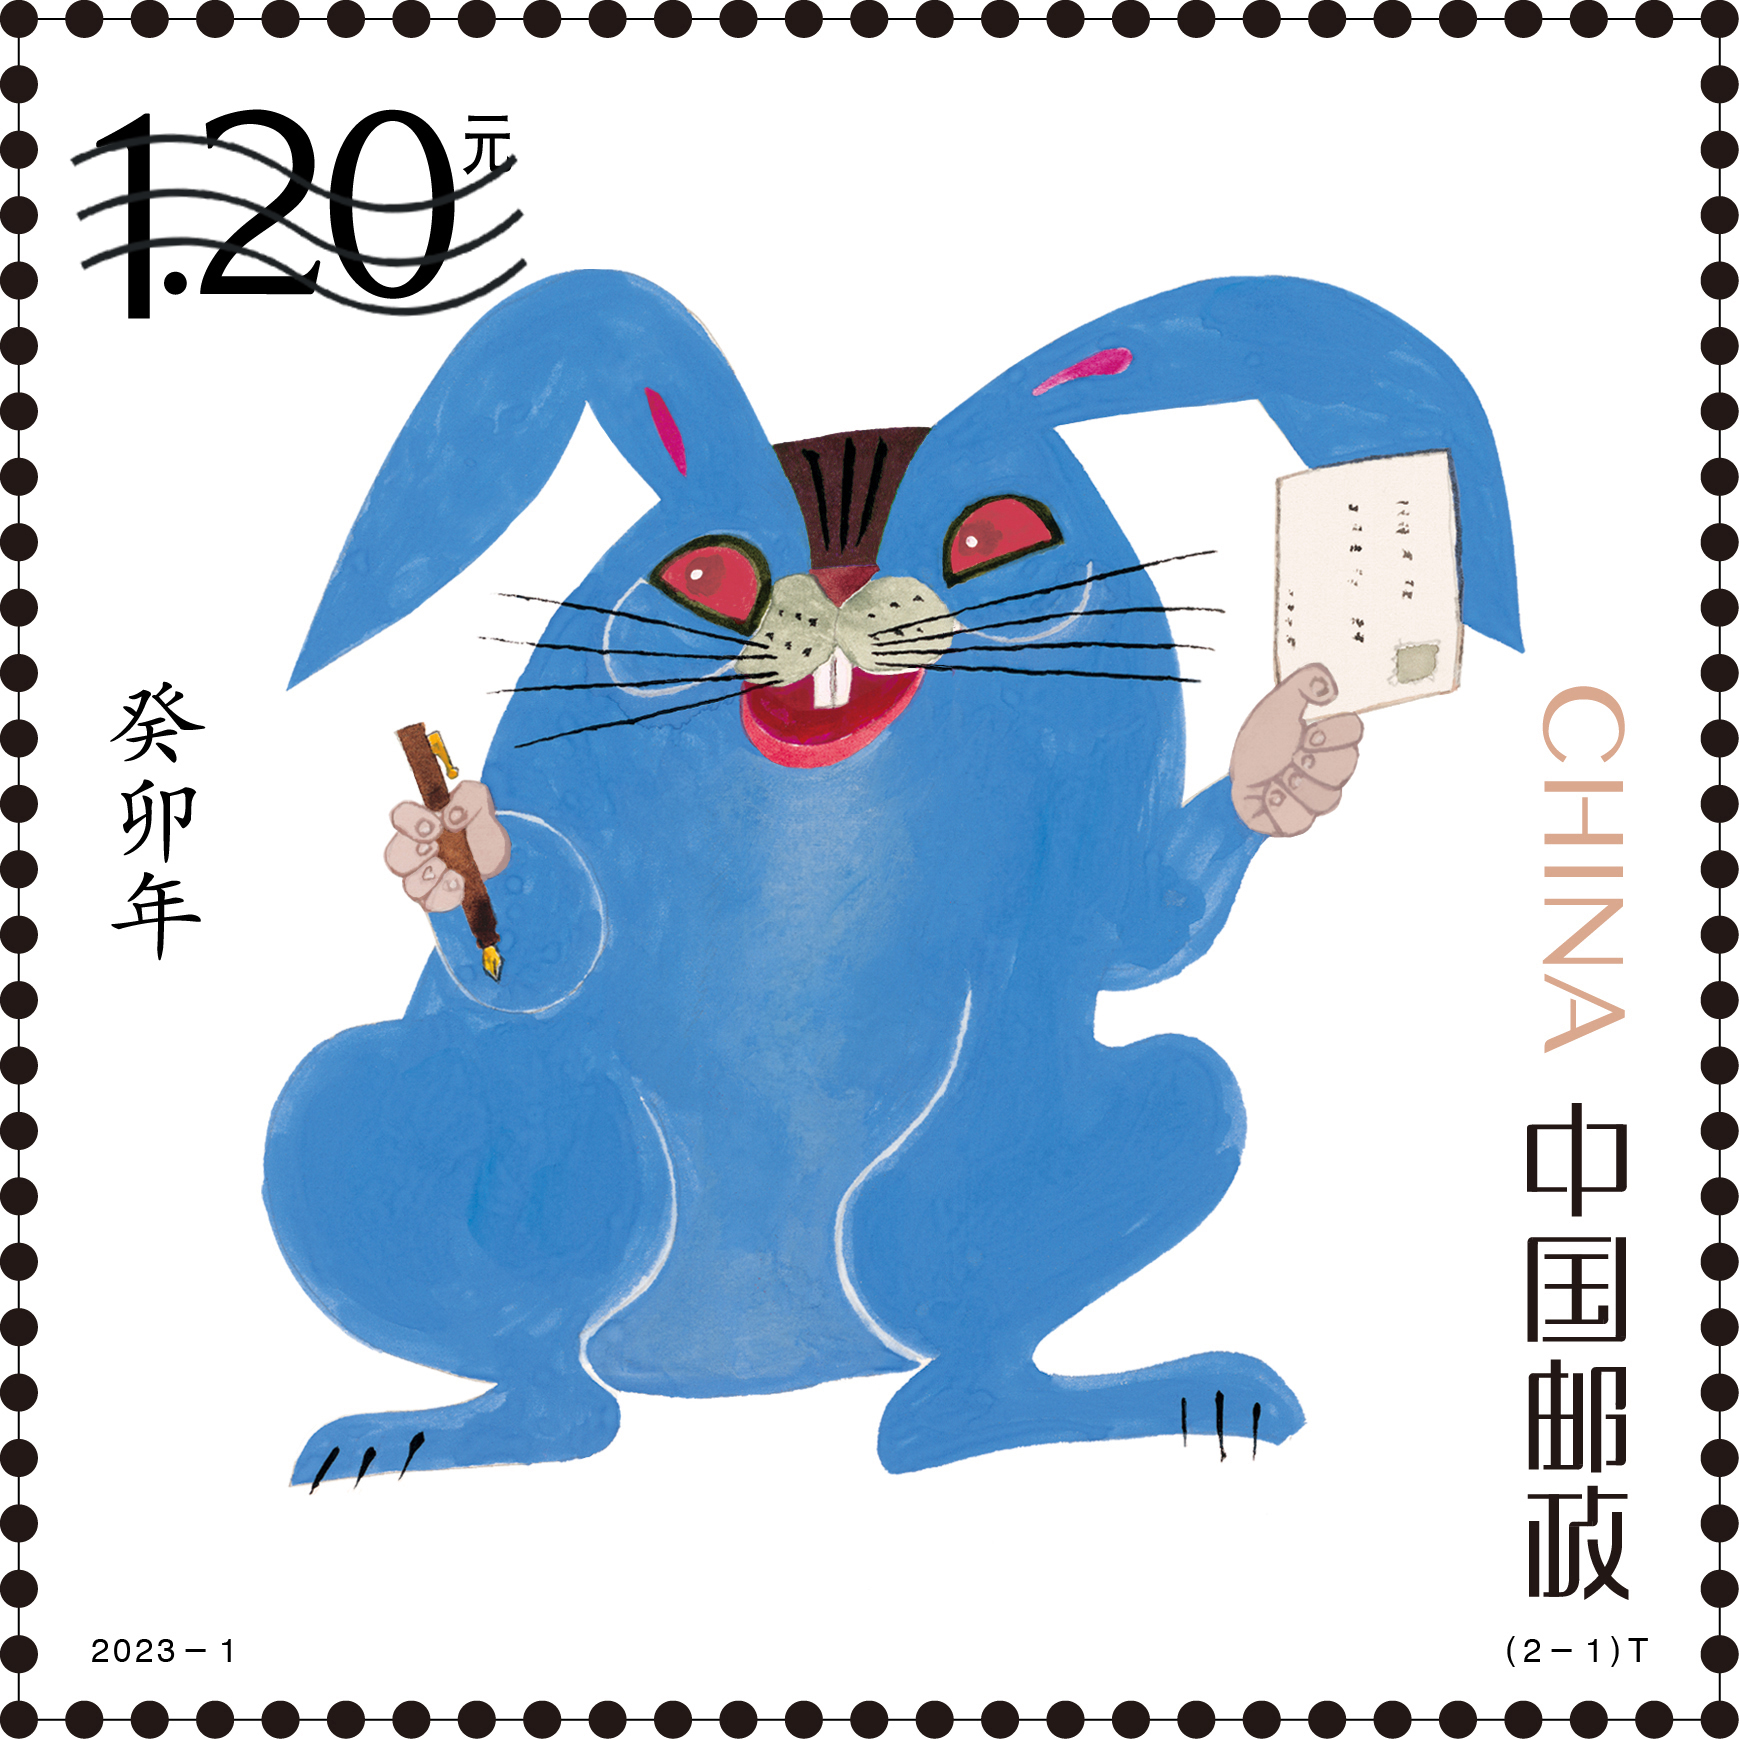 1980年的《庚申年》邮票 - 中国邮政邮票博物馆